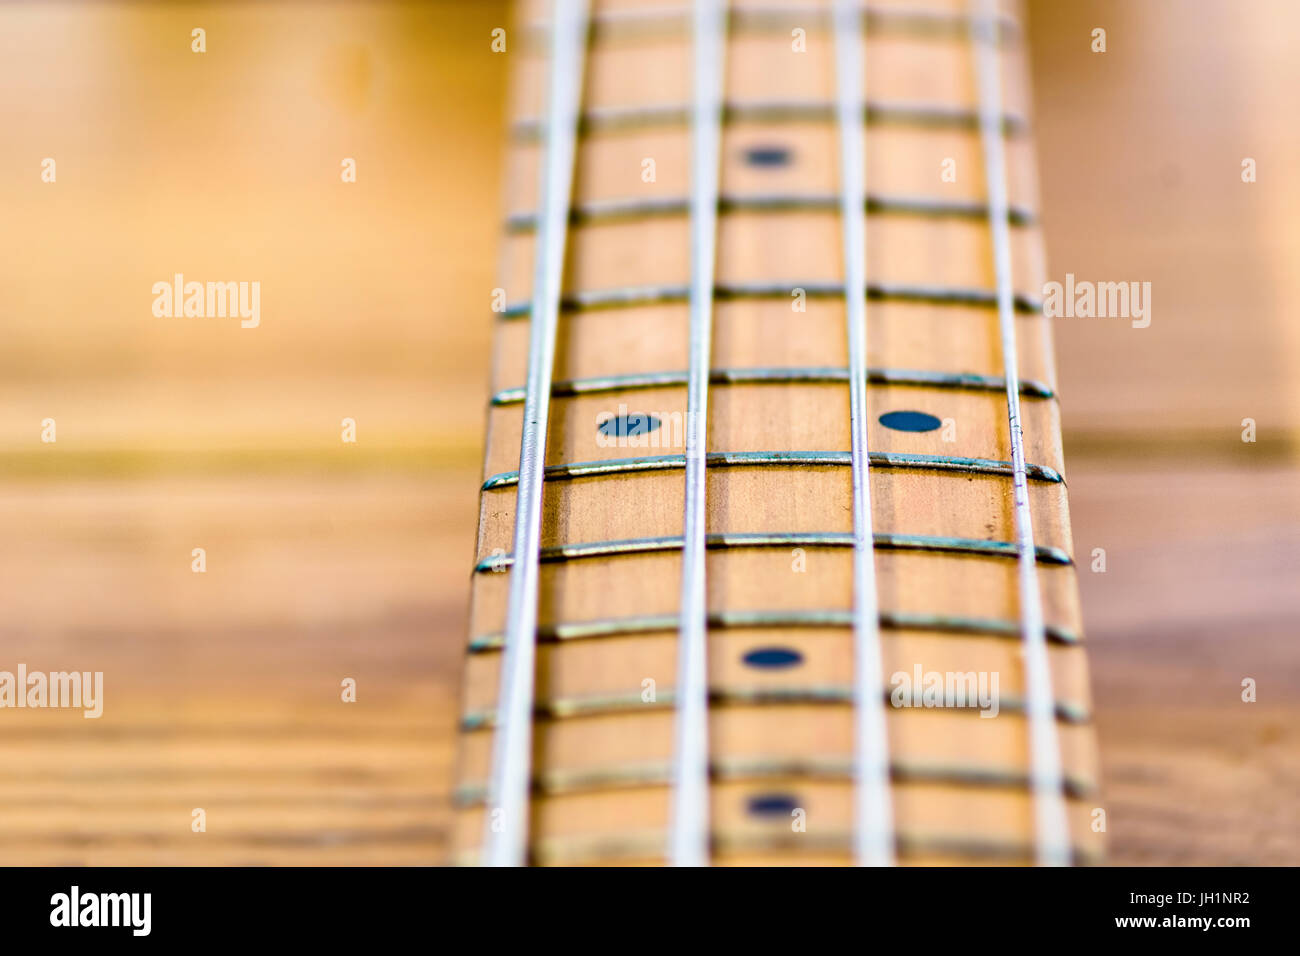 Nahaufnahme der elektrischen Bassgitarre Griffbrett, Tiefe des Feldes,  hölzernen Hintergrund unscharf gestellt Stockfotografie - Alamy